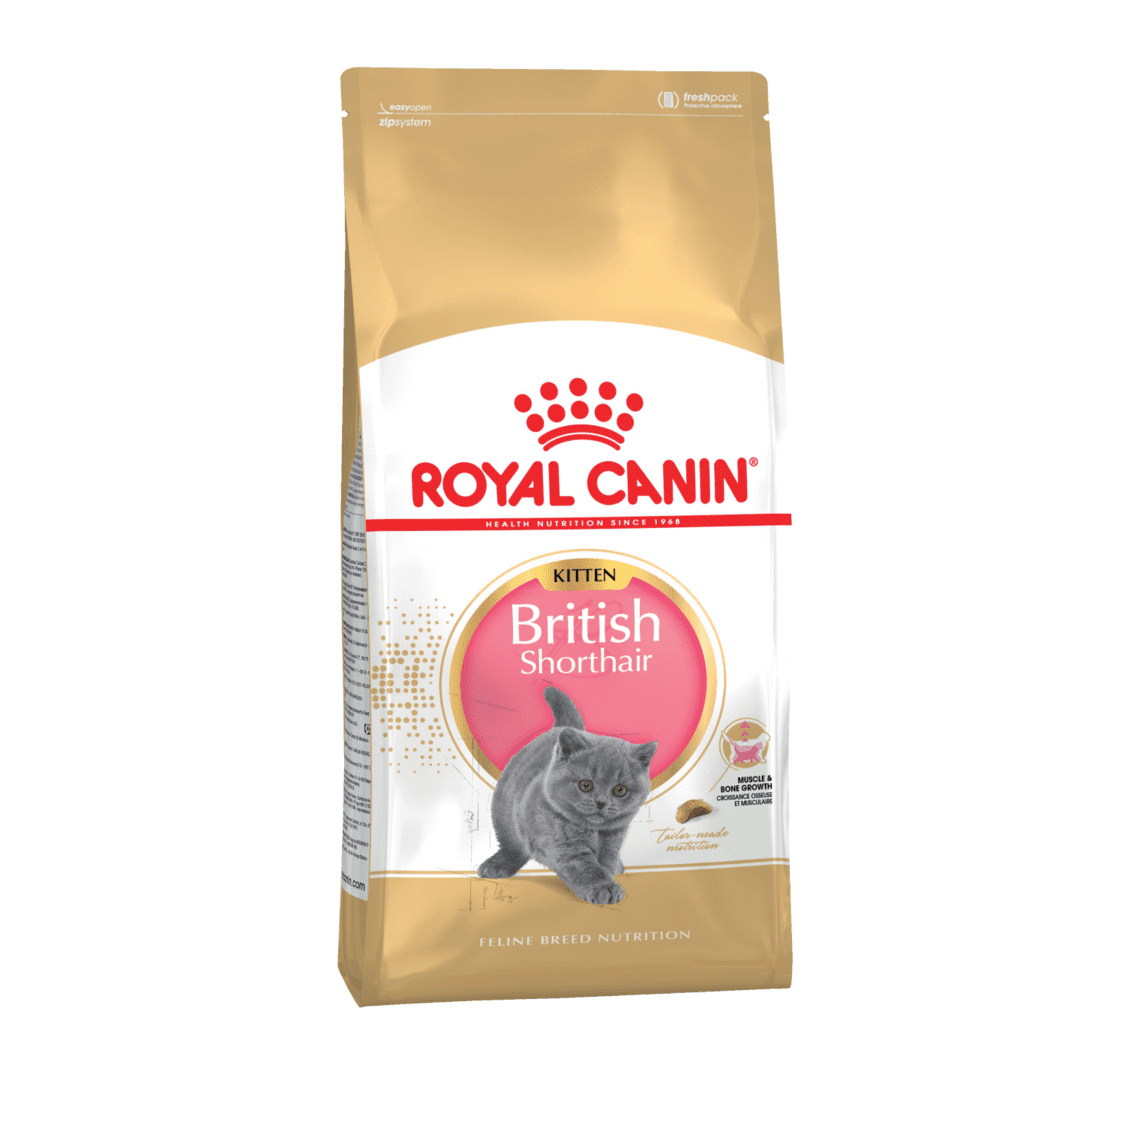 Royal Canin Корм Royal Canin корм для британских короткошерстных котят 4-12 мес. (400 г) royal canin корм royal canin для персидских котят 4 12 мес 400 г